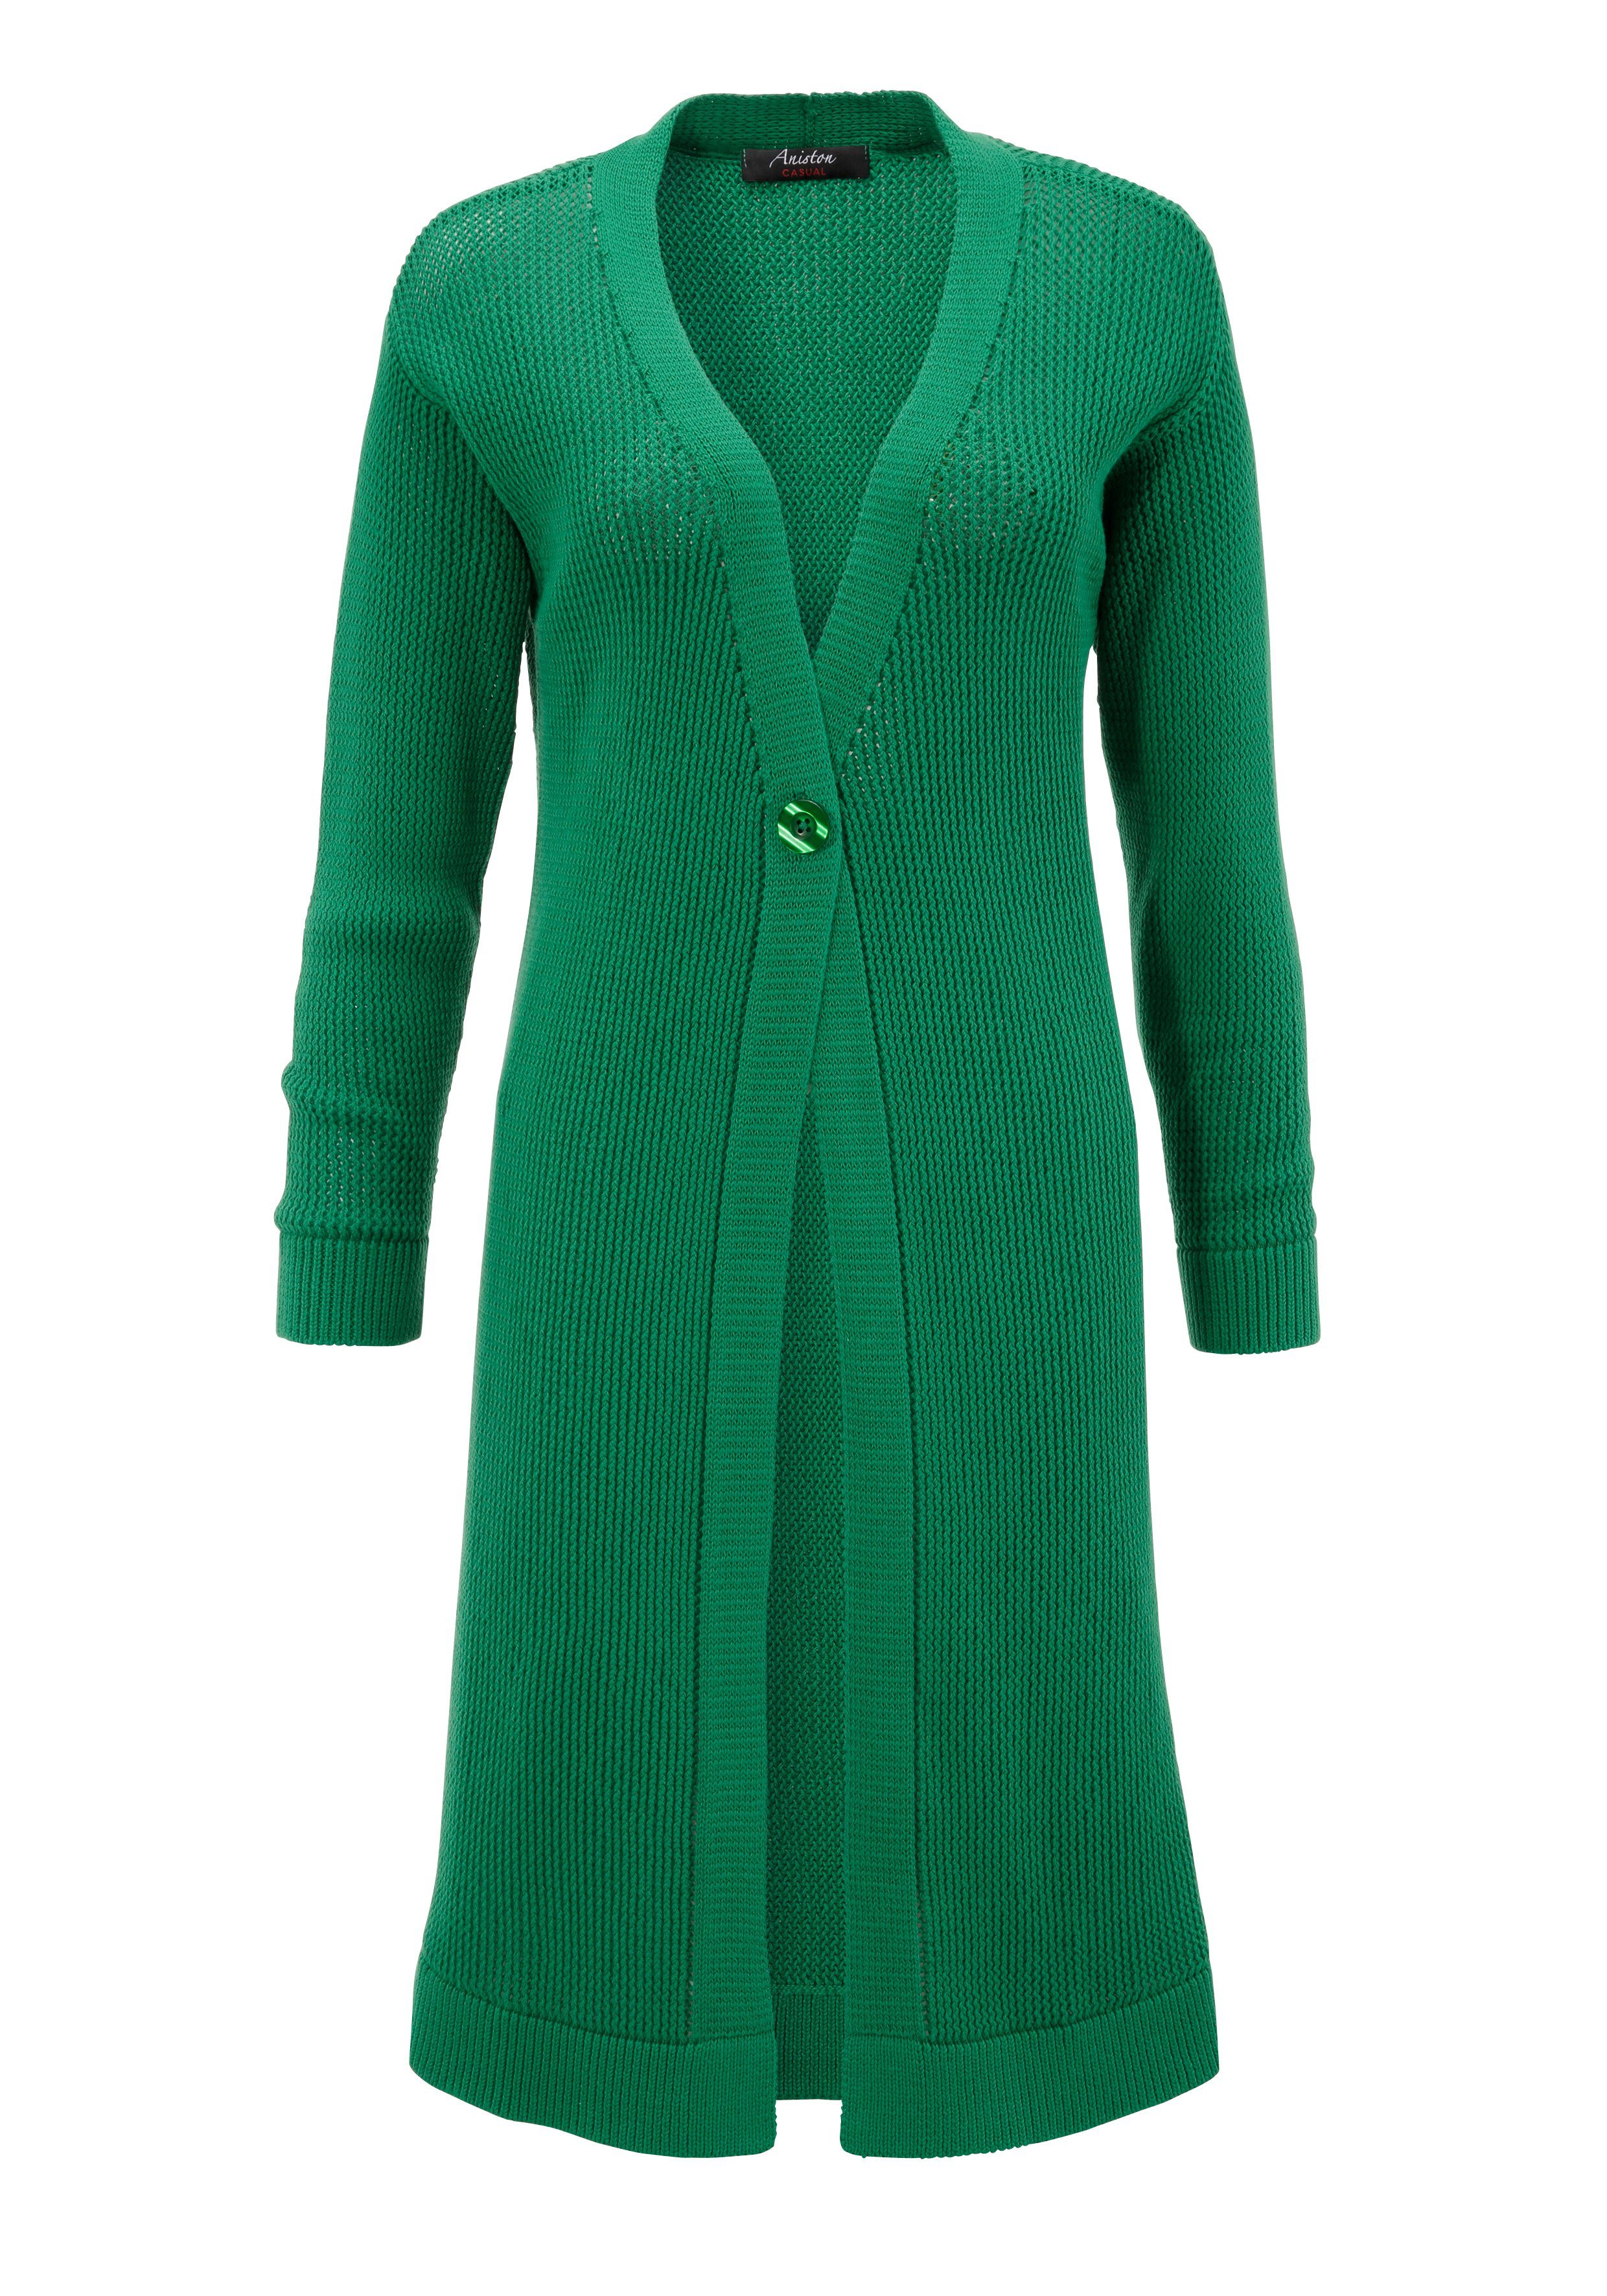 Aniston CASUAL im smaragd trendigem Netzstrickmuster Strickjacke